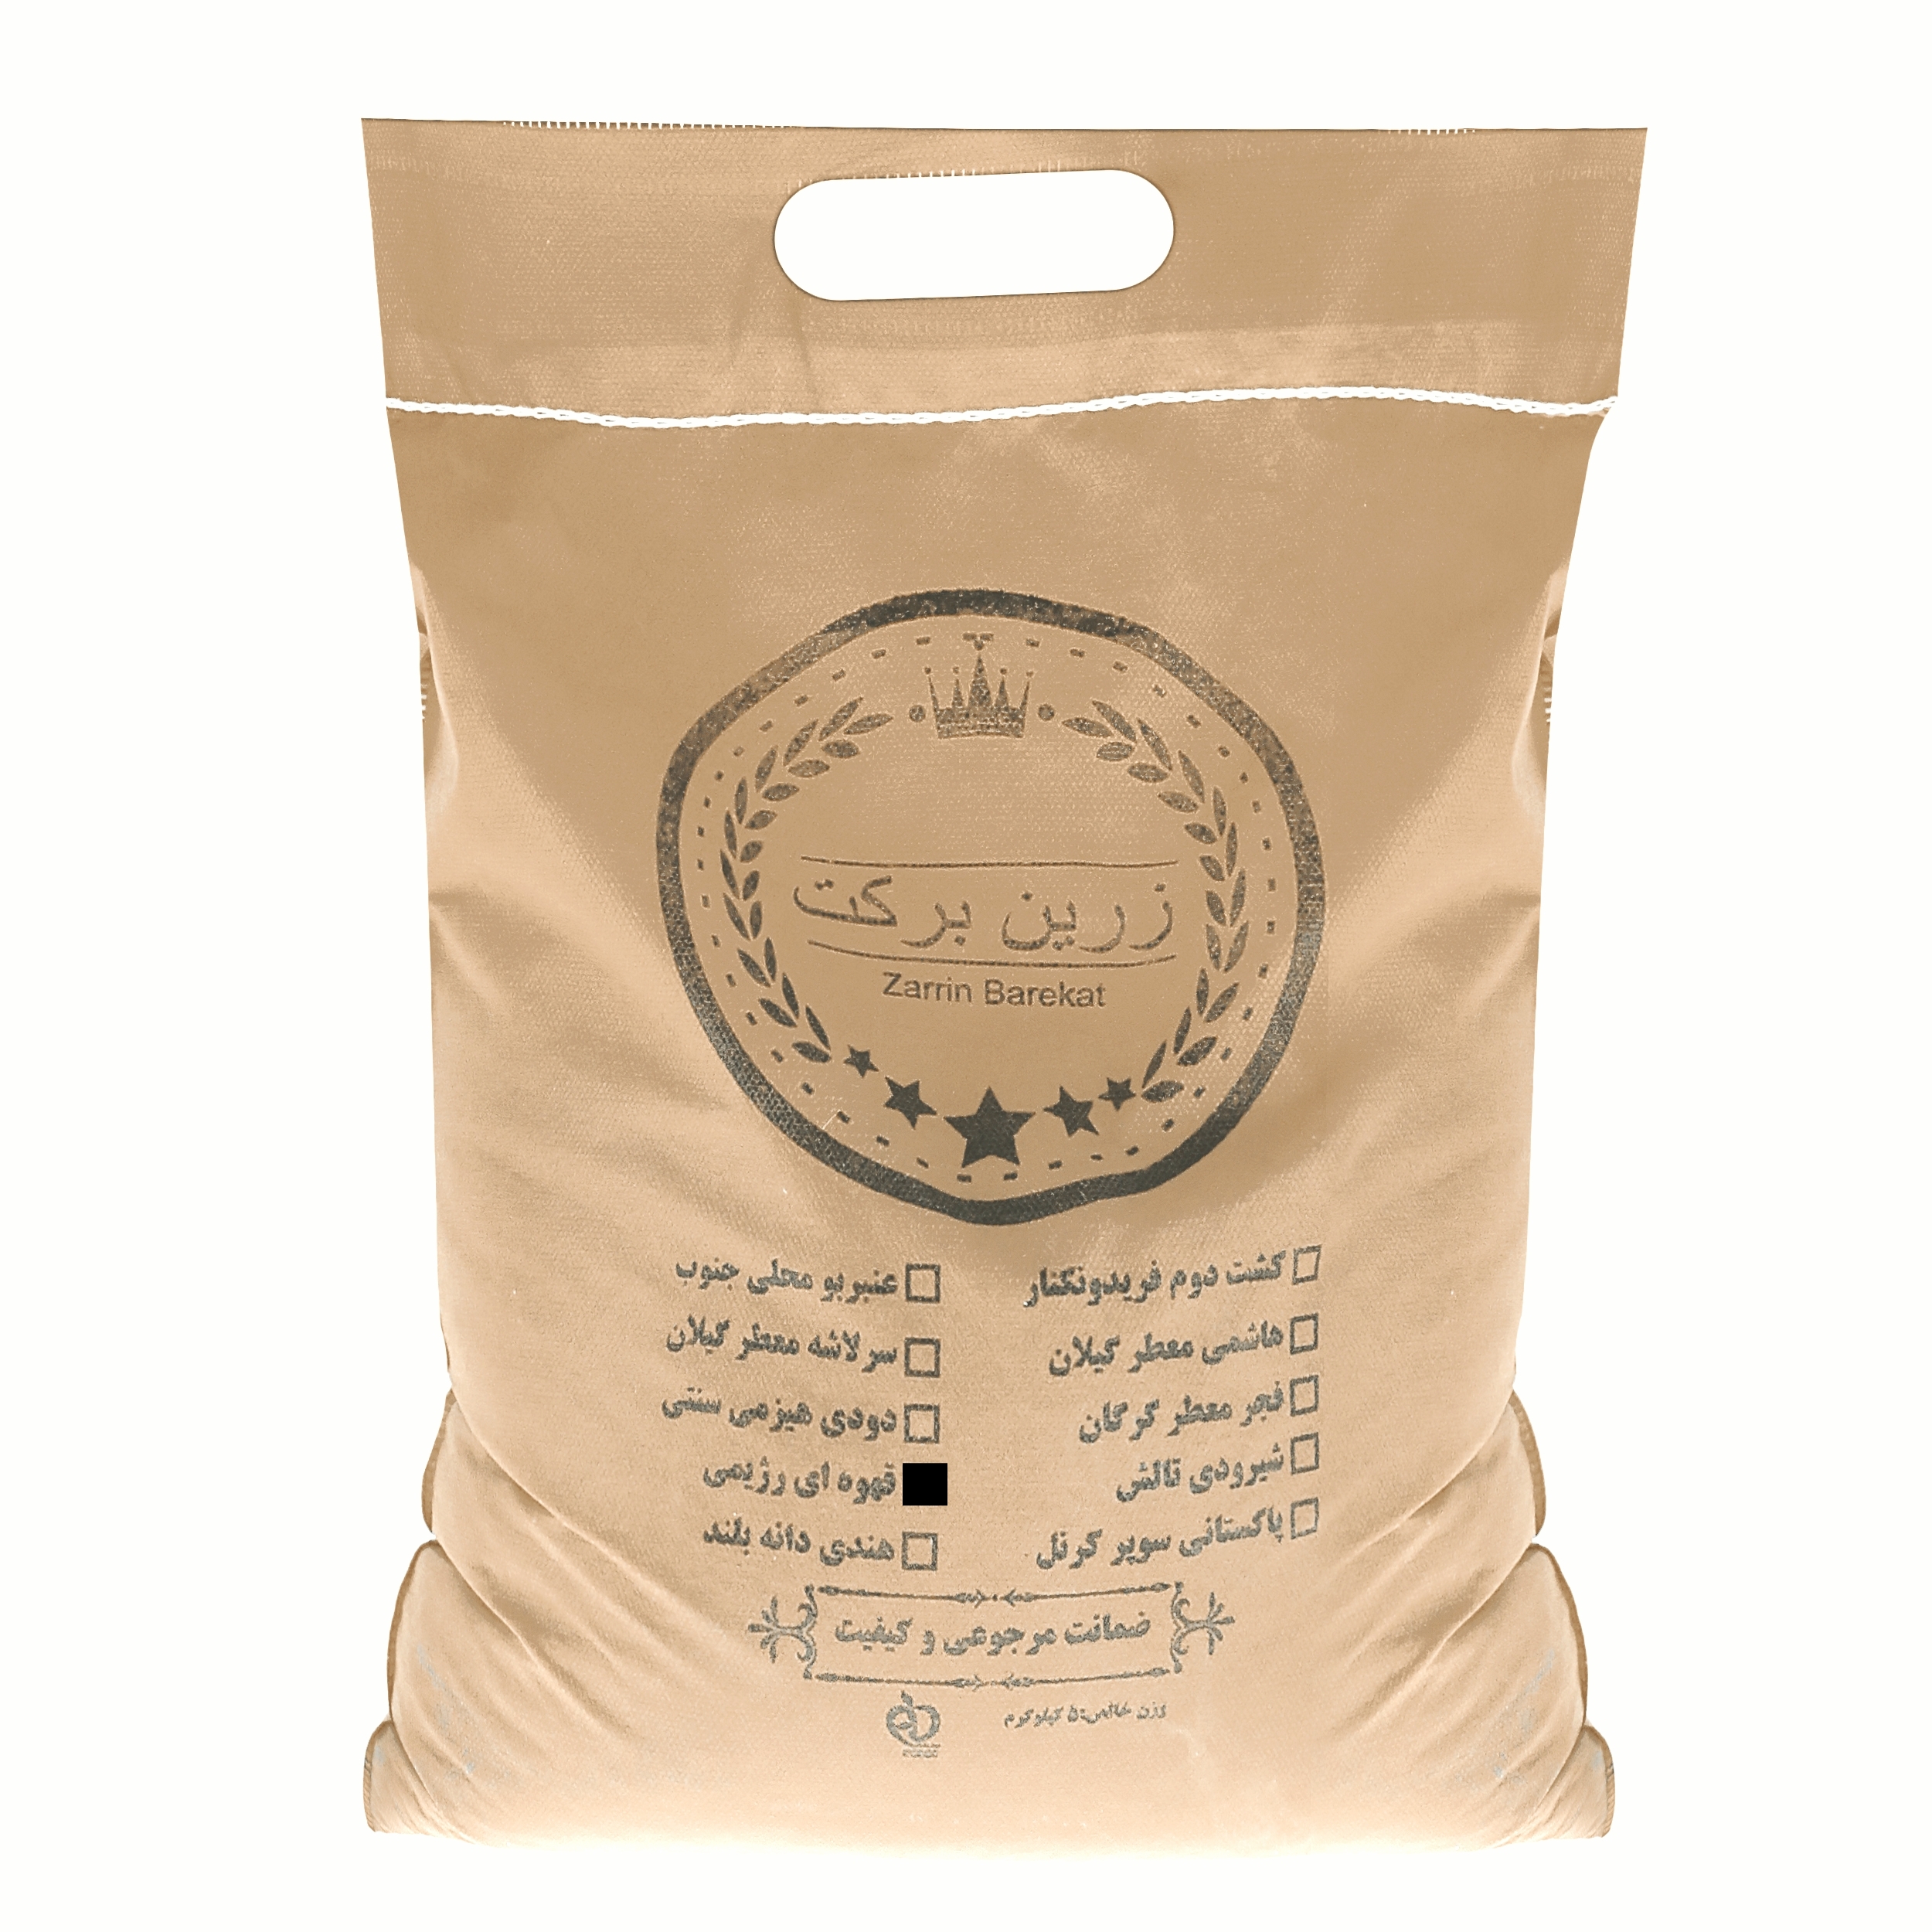 نکته خرید - قیمت روز برنج قهوه ای رژیمی زرین برکت - 5 کیلوگرم خرید